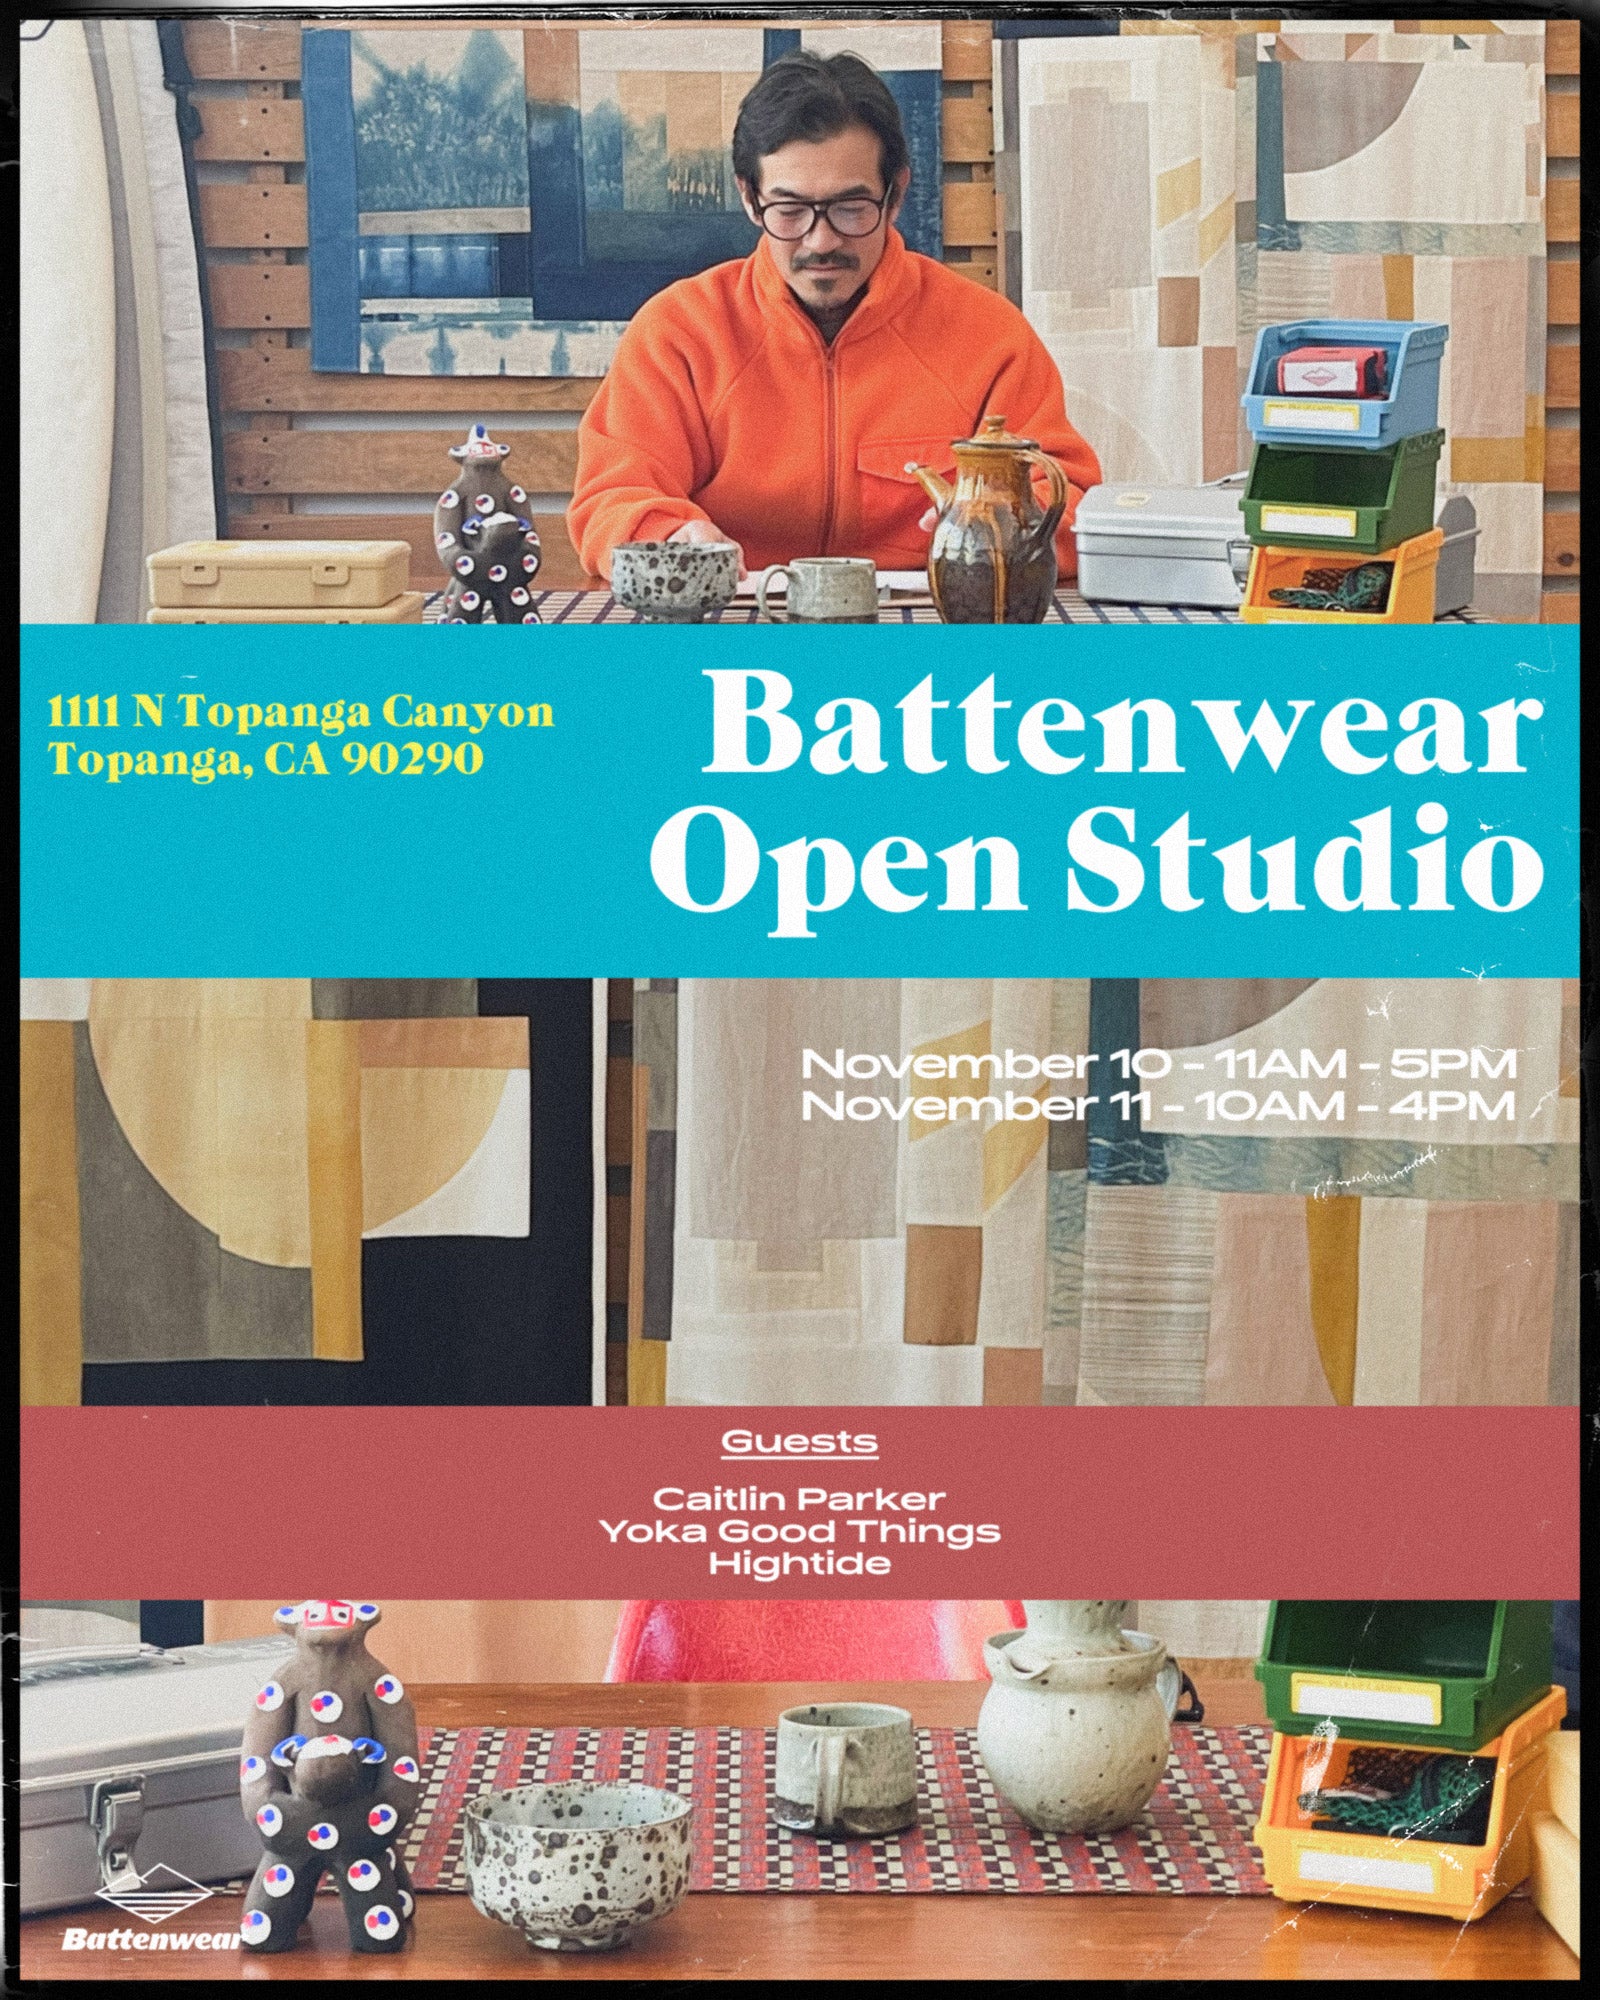 Battenwear Open Studio